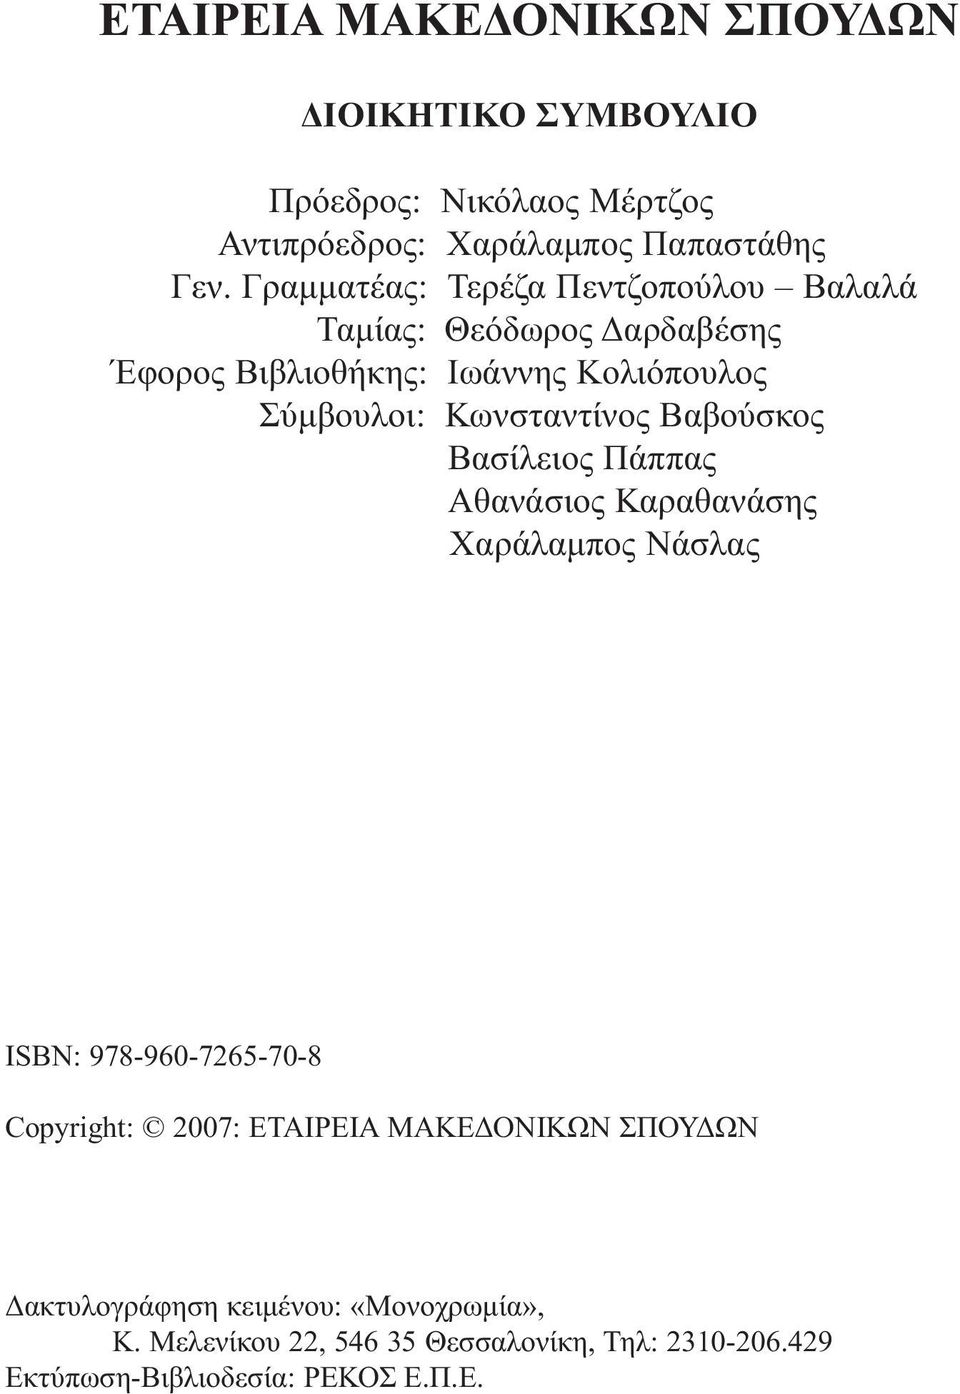 Κωνσταντίνος Βαβούσκος Βασίλειος Πάππας Αθανάσιος Καραθανάσης Χαράλαμπος Νάσλας ISBN: 978-960-7265-70-8 Copyright: 2007: